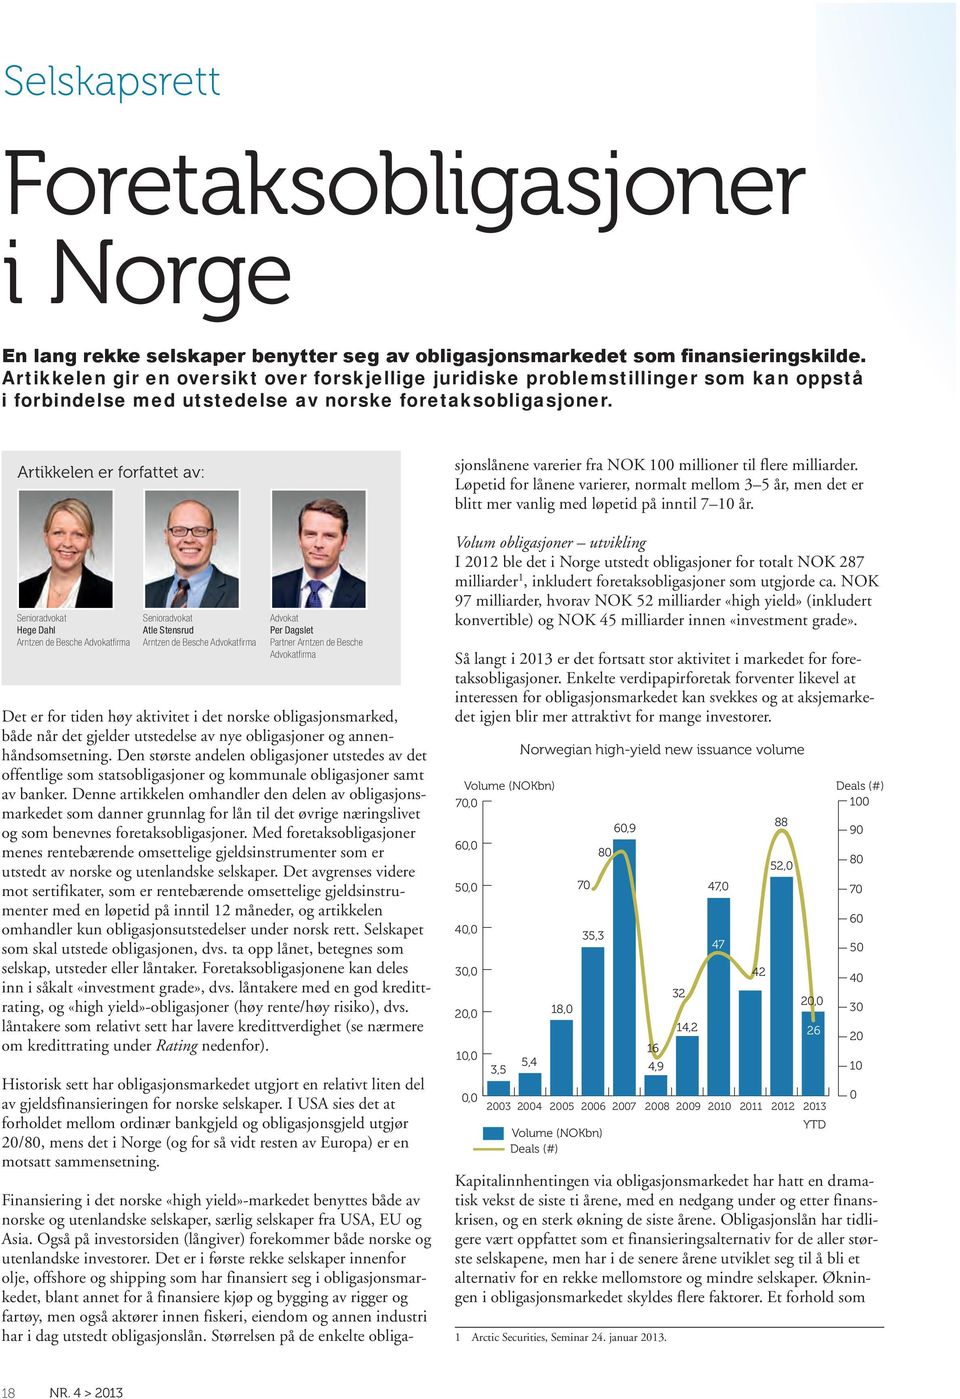 Artikkelen er forfattet av: Finansiering i det norske «high yield»-markedet benyttes både av norske og utenlandske selskaper, særlig selskaper fra USA, EU og Asia.